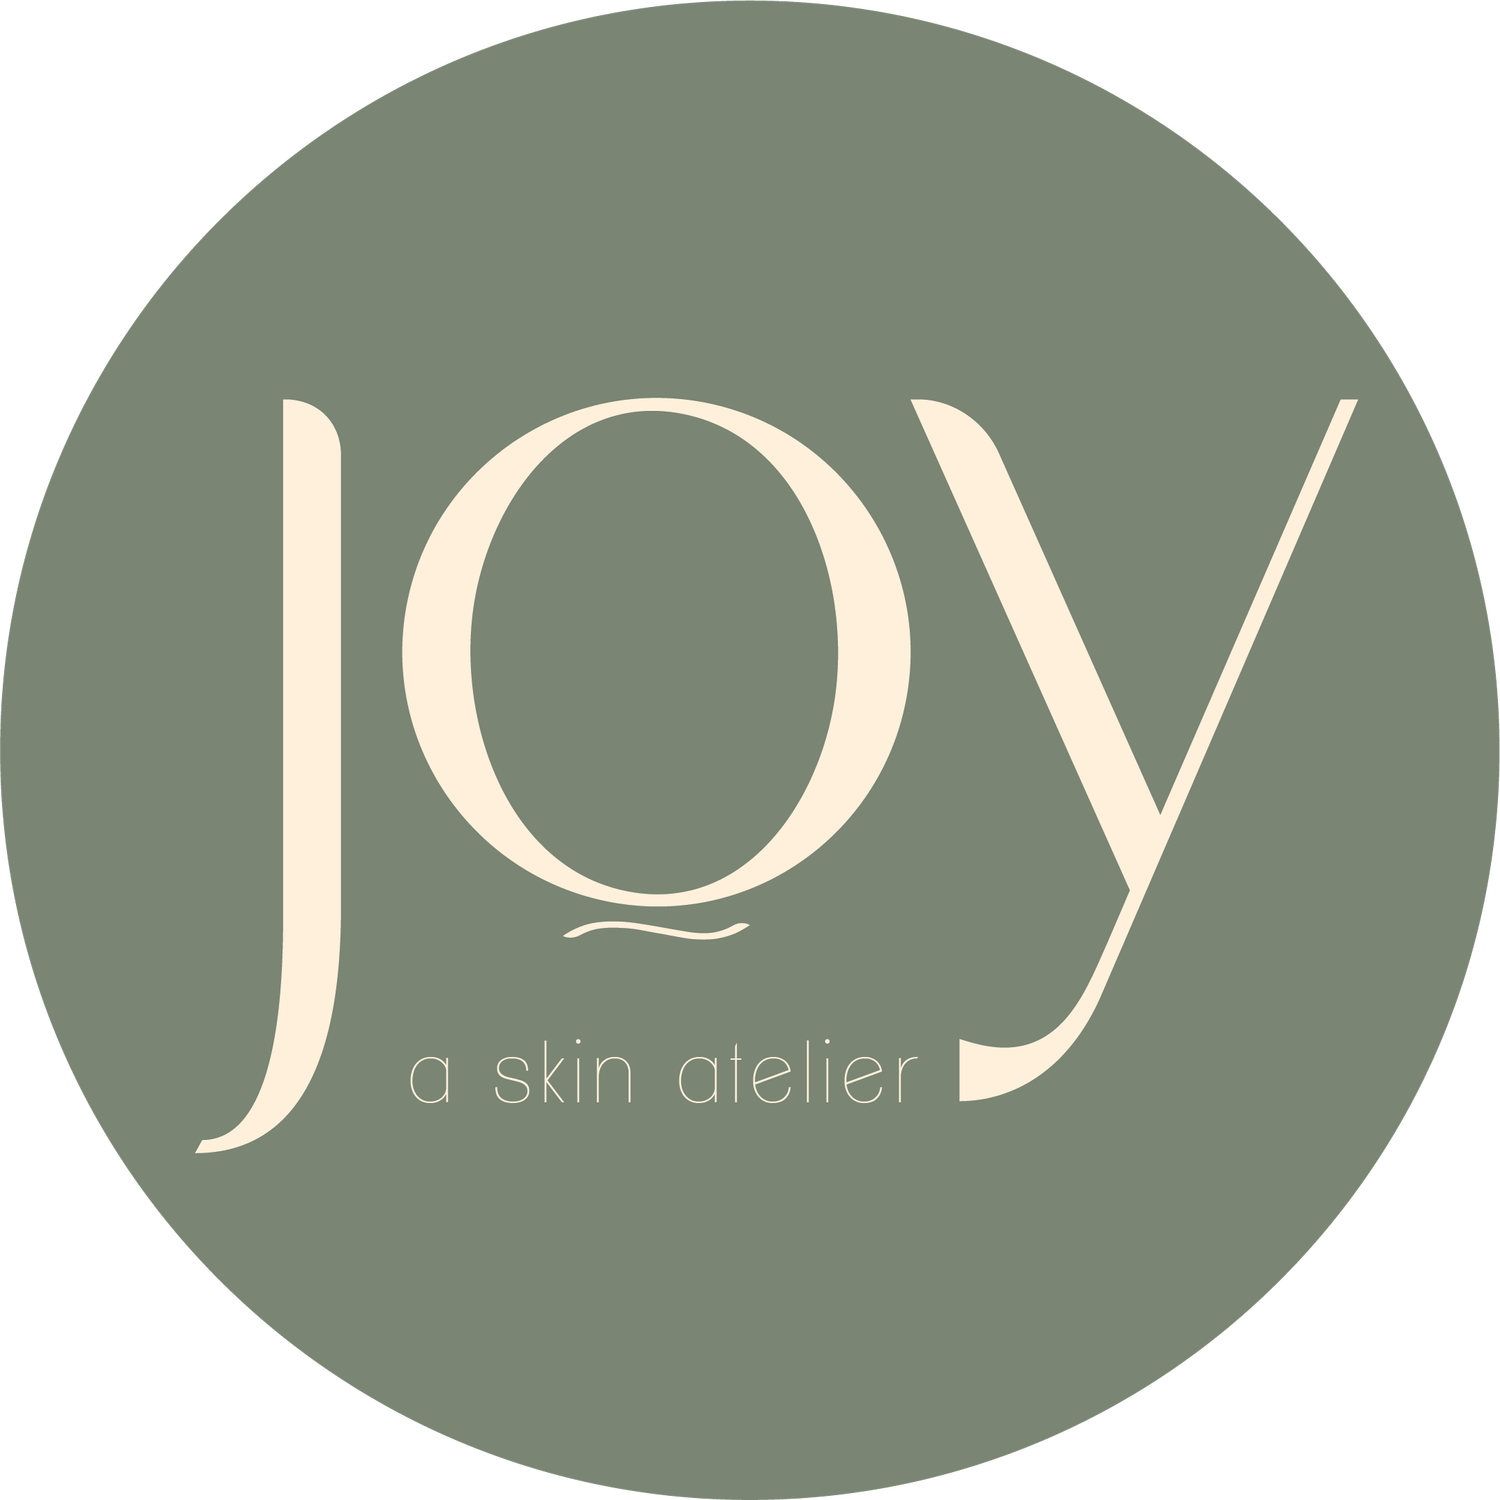 JOY - A Skin Atelier